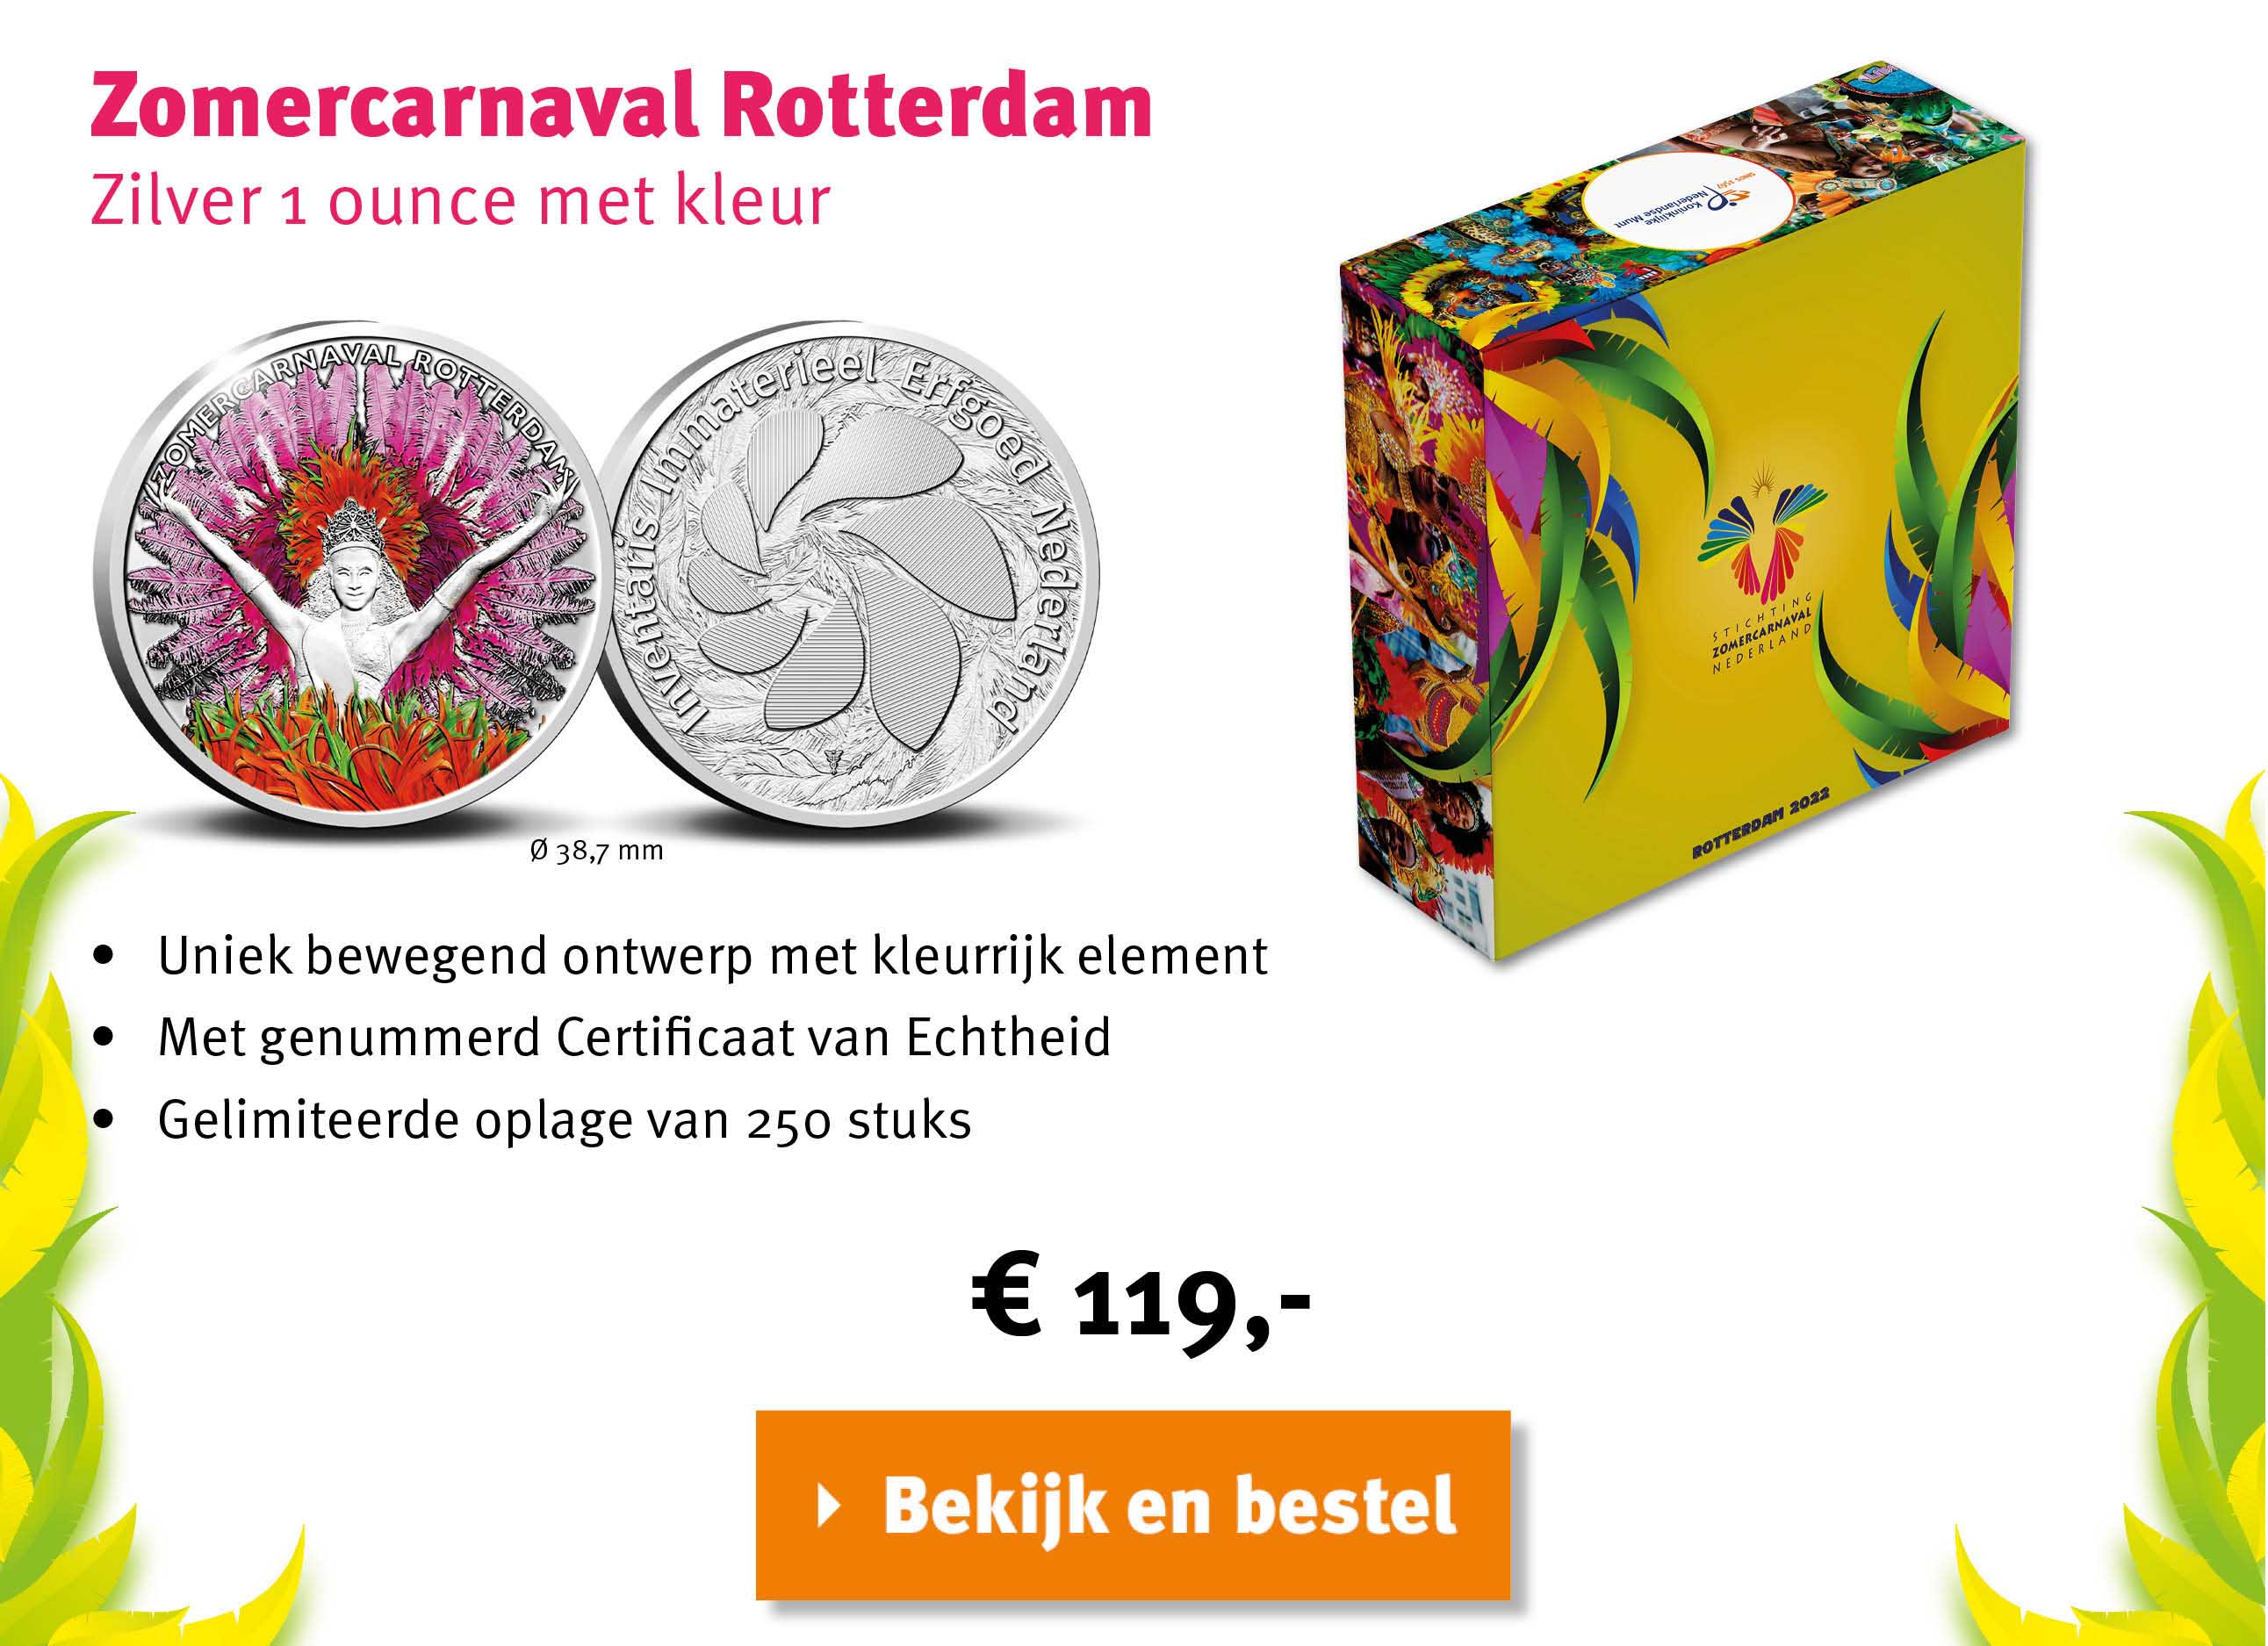 Bekijk en bestel: Zomercarnaval Rotterdam Zilver 1 ounce met kleur